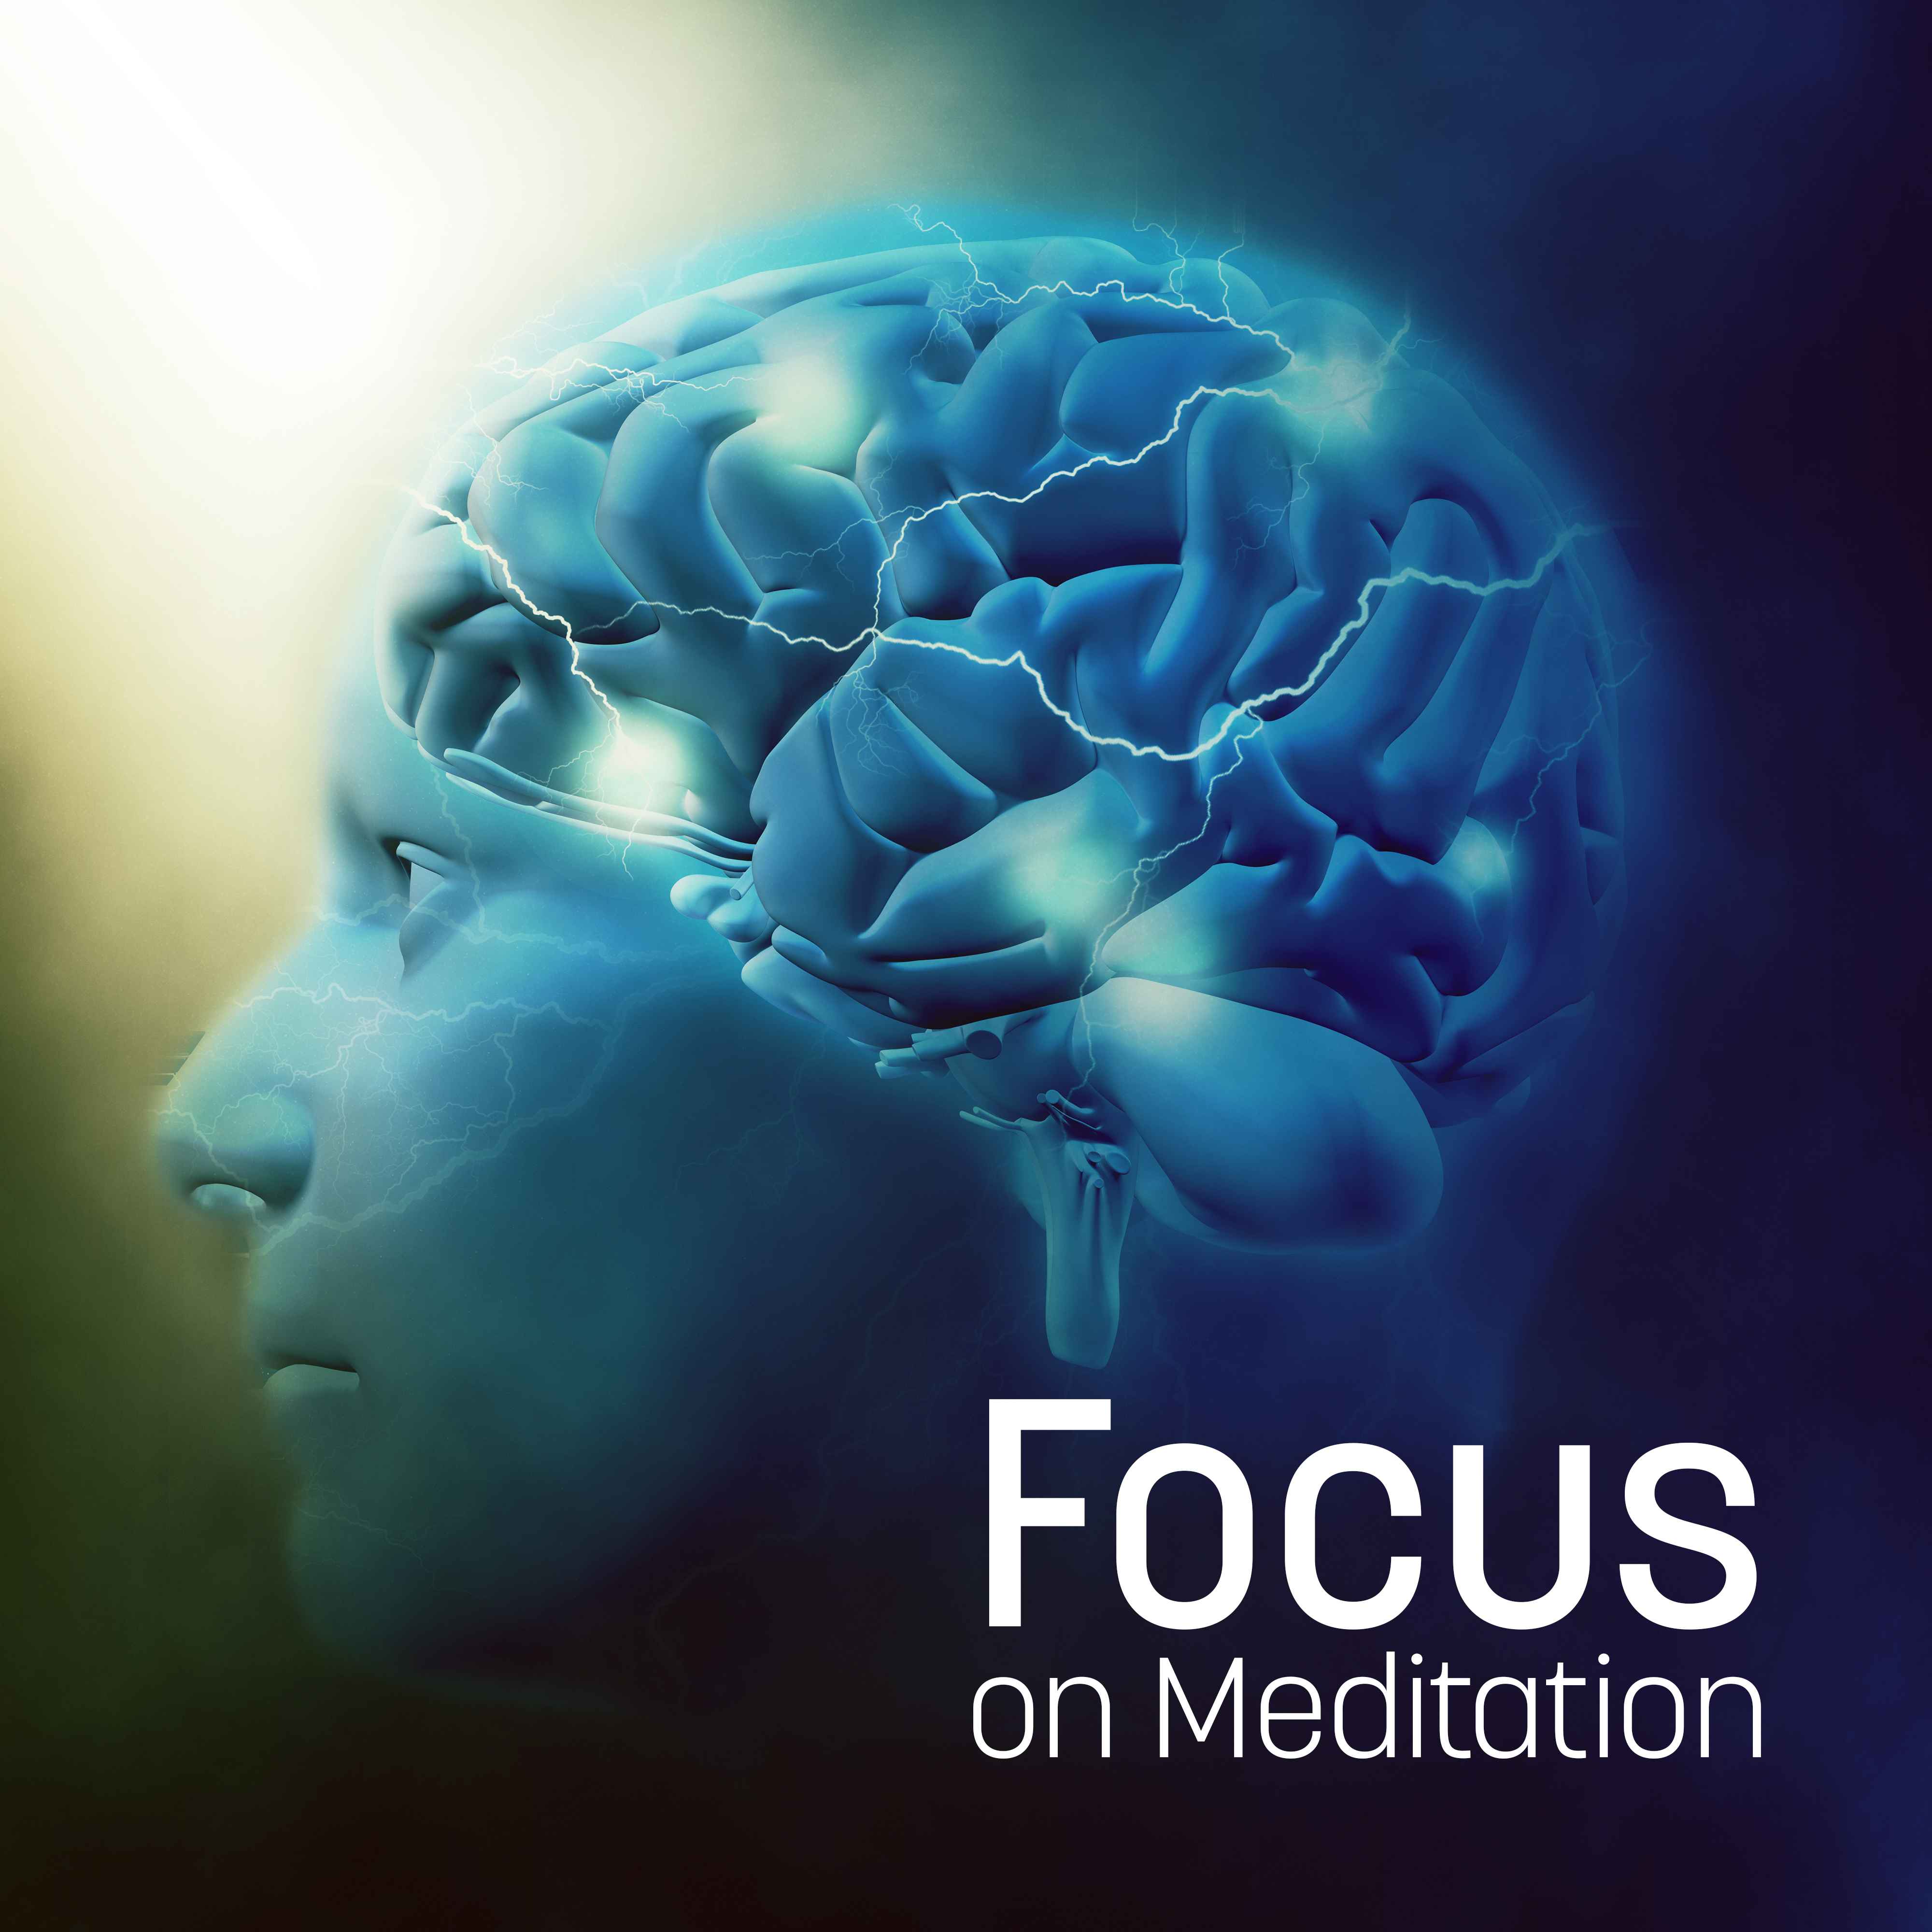 Focus on Meditation